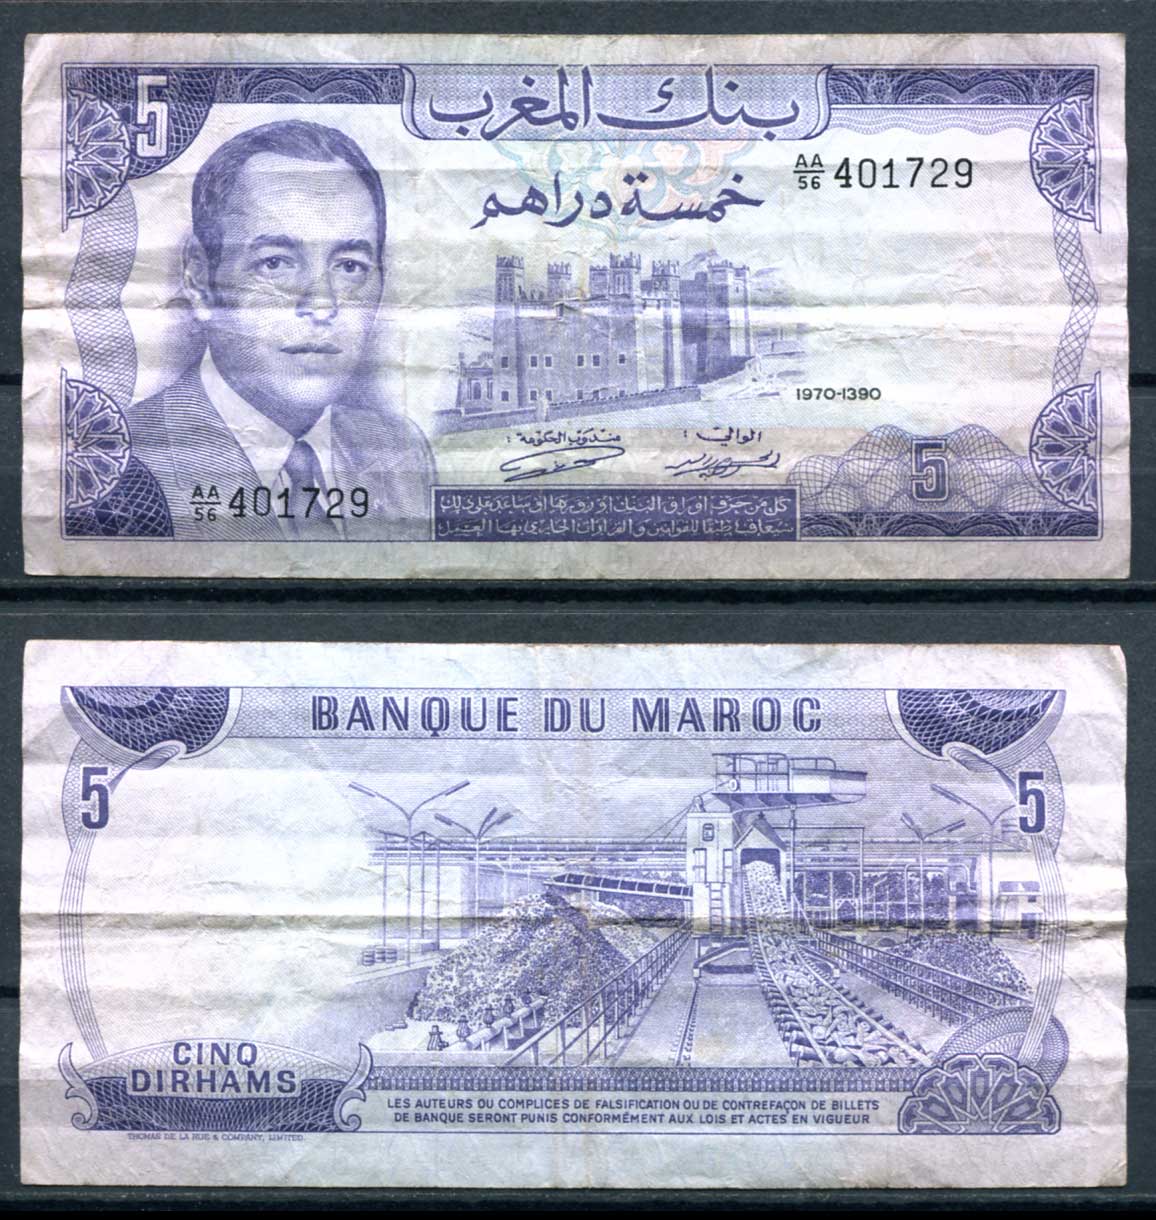 Рубль дирхам курс на сегодня в дубае. Дирхамы в рубли. Купюра 10 дирхам ОАЭ Марокко 1970 годы. Как выглядят дирхамы Марокко. Какой номинал есть в дирхамах.